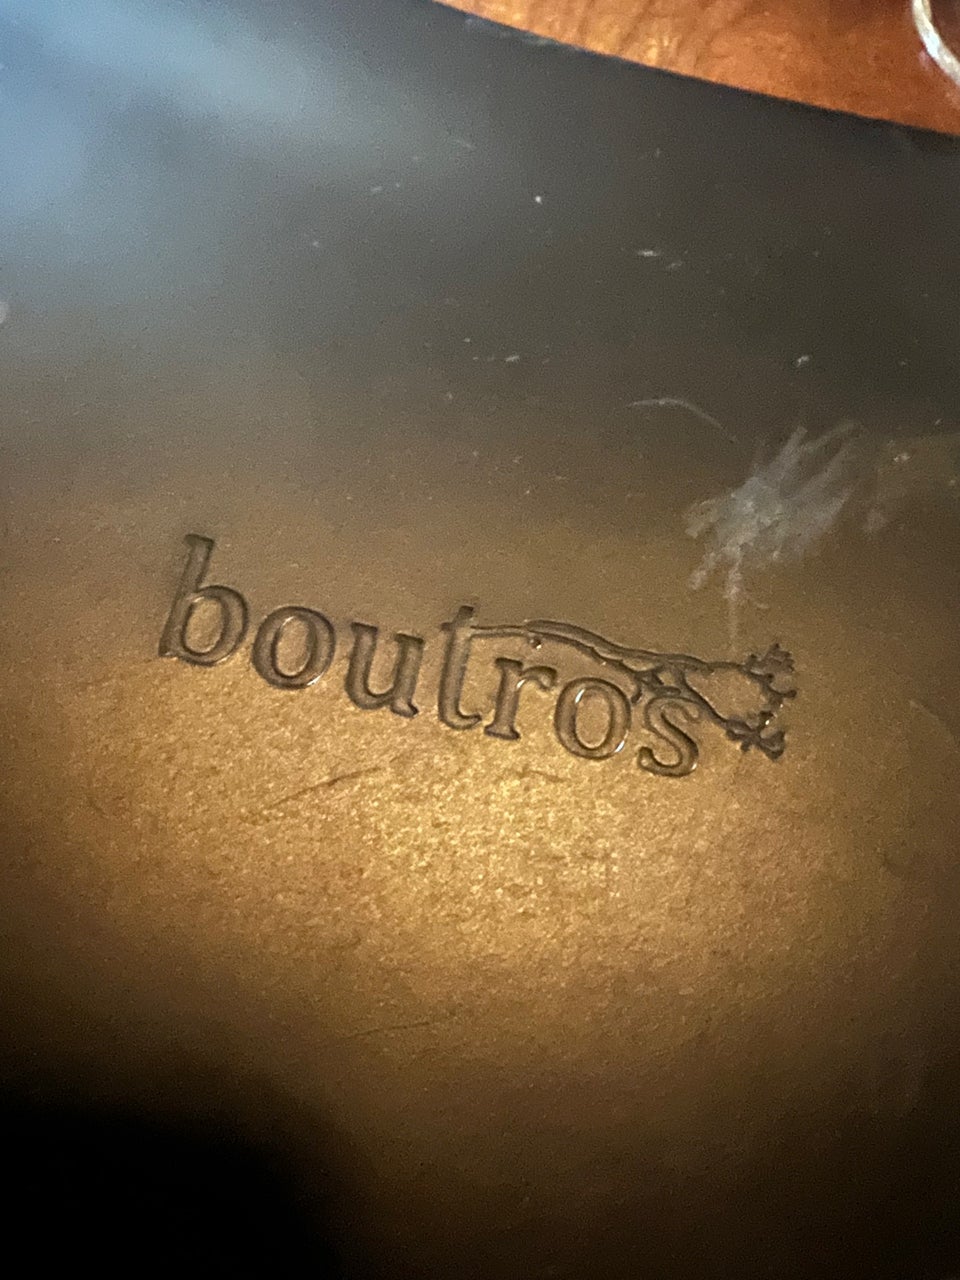 Boutros